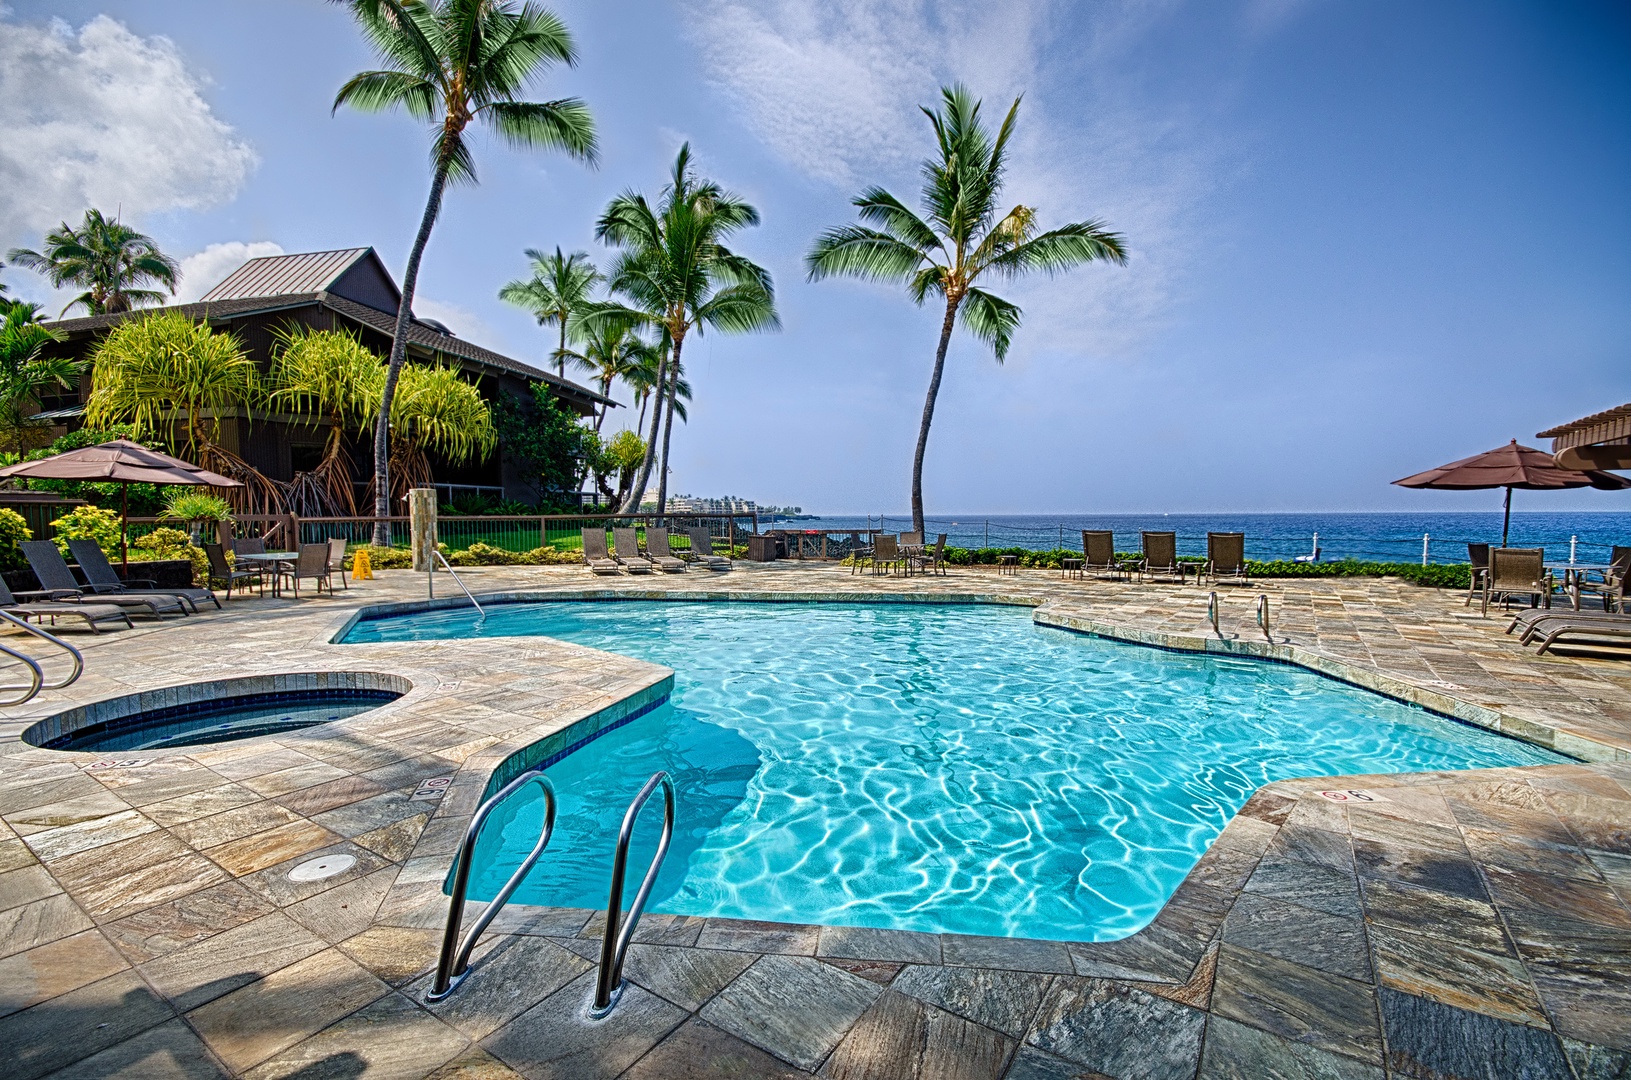 Kailua Kona Vacation Rentals, Kanaloa 701 - Pool with hot tub 100 feet from the condo